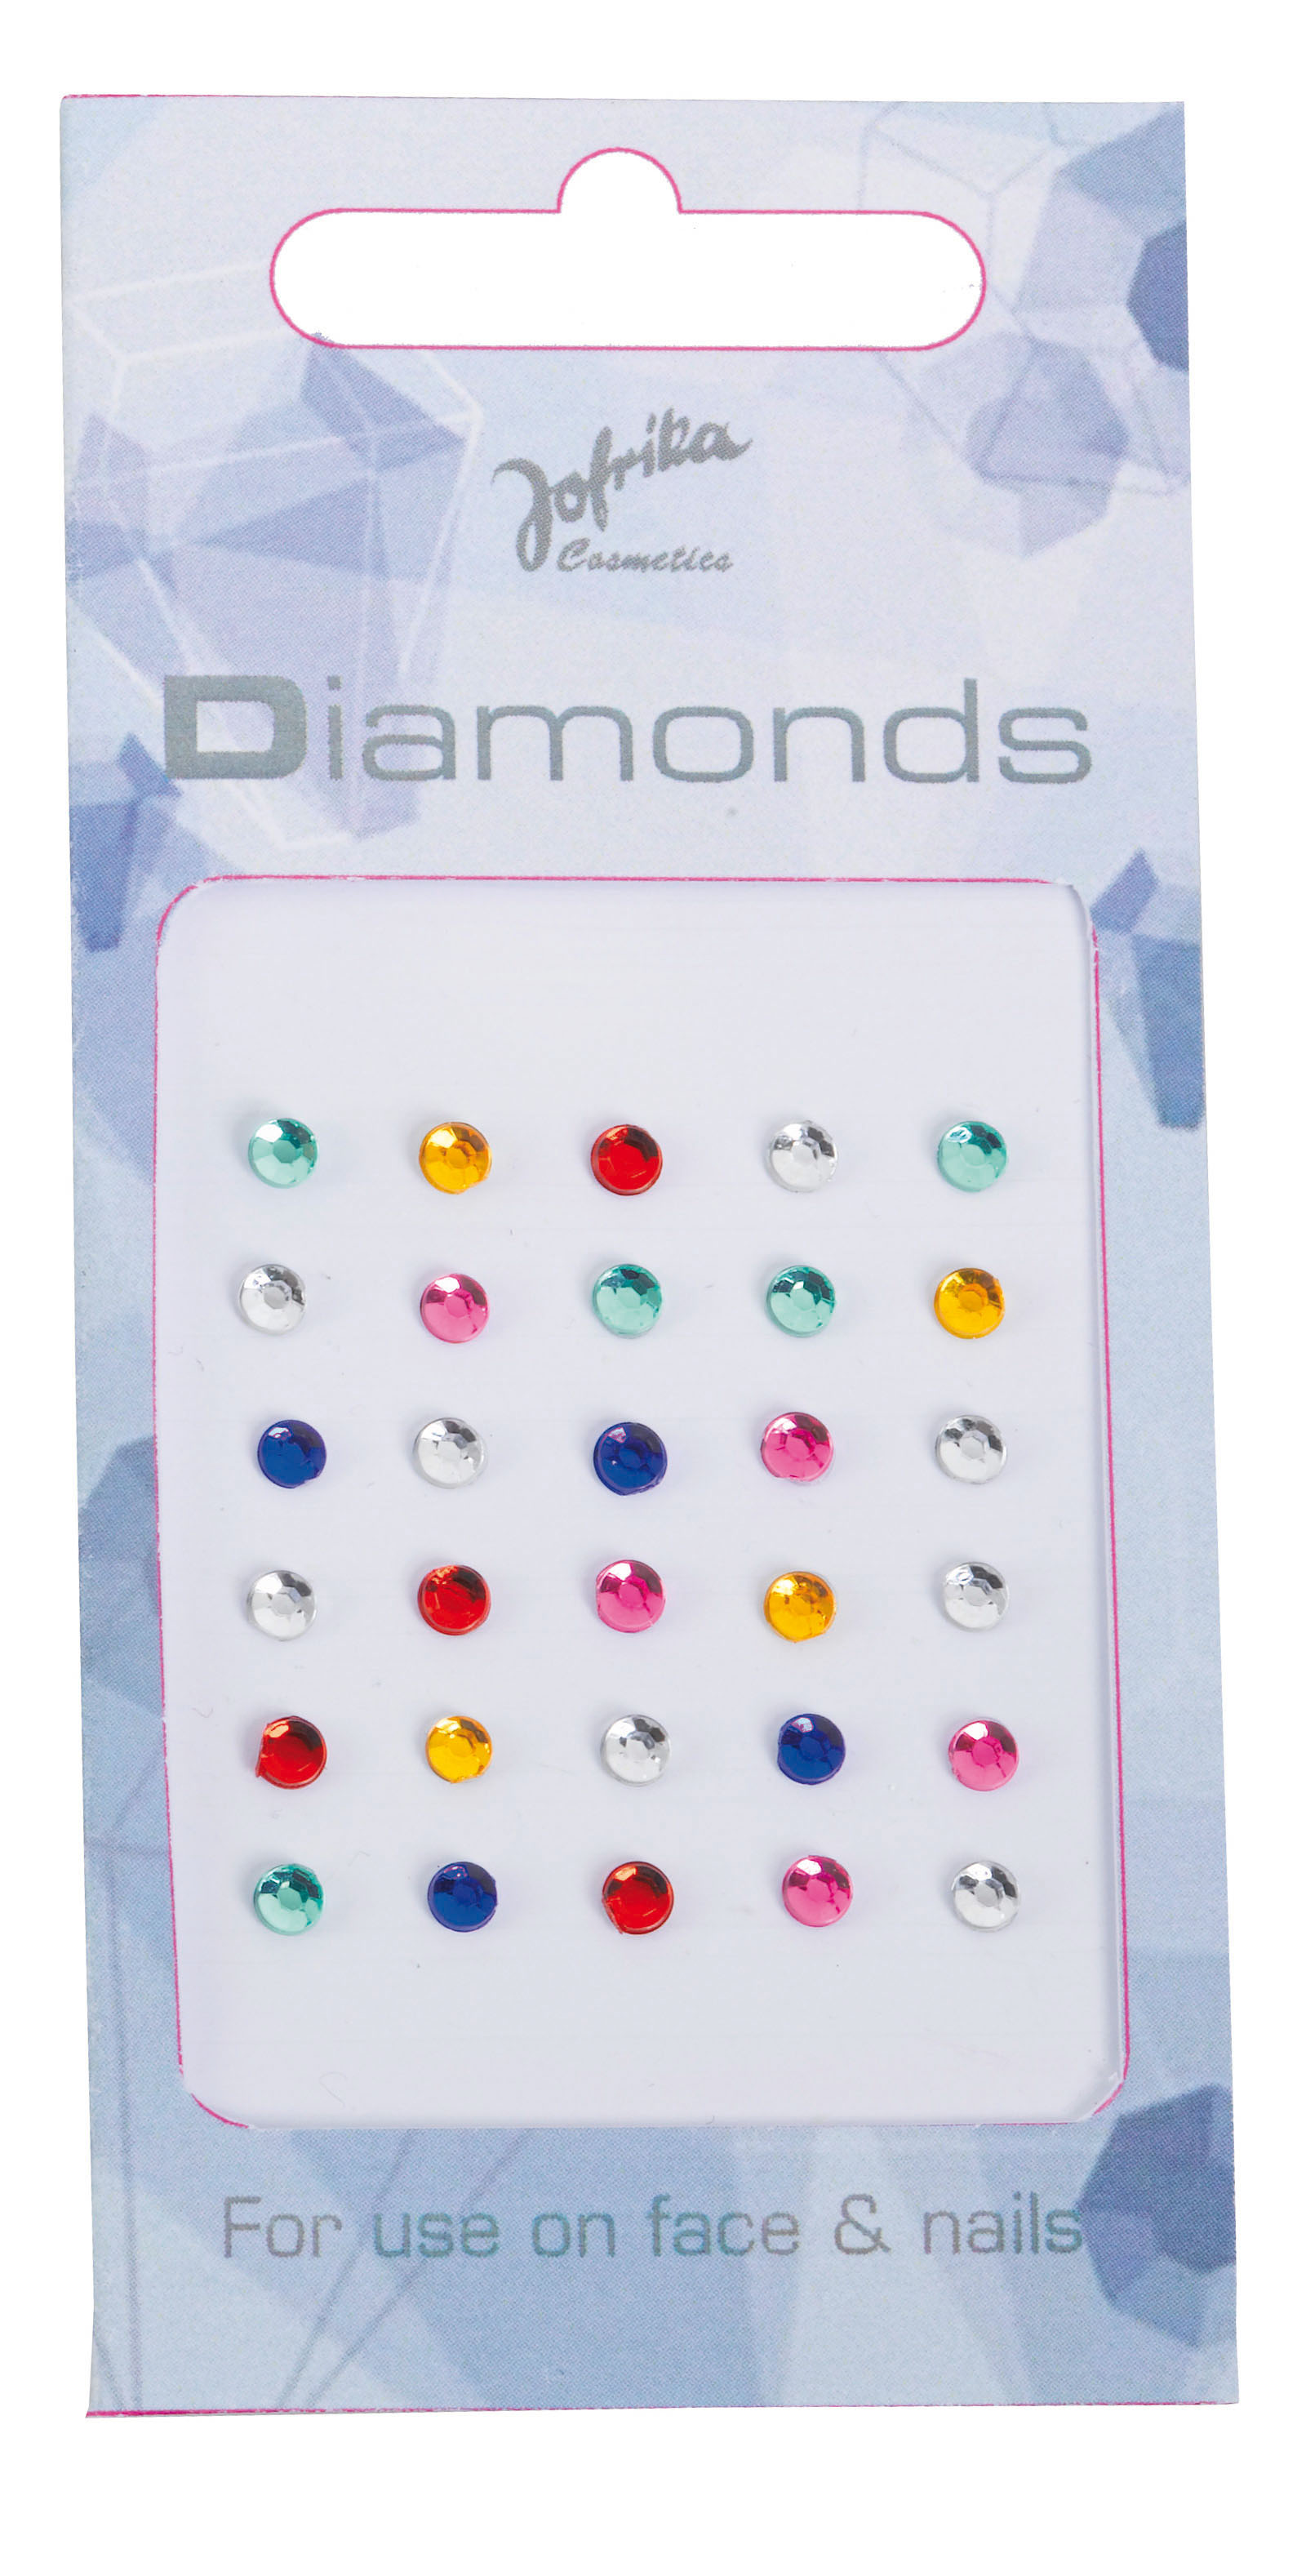 Jofrika Cosmetics 713260 - Diamonds Multicolor, Selbstklebende runde Steinchen für Haut und Nägel